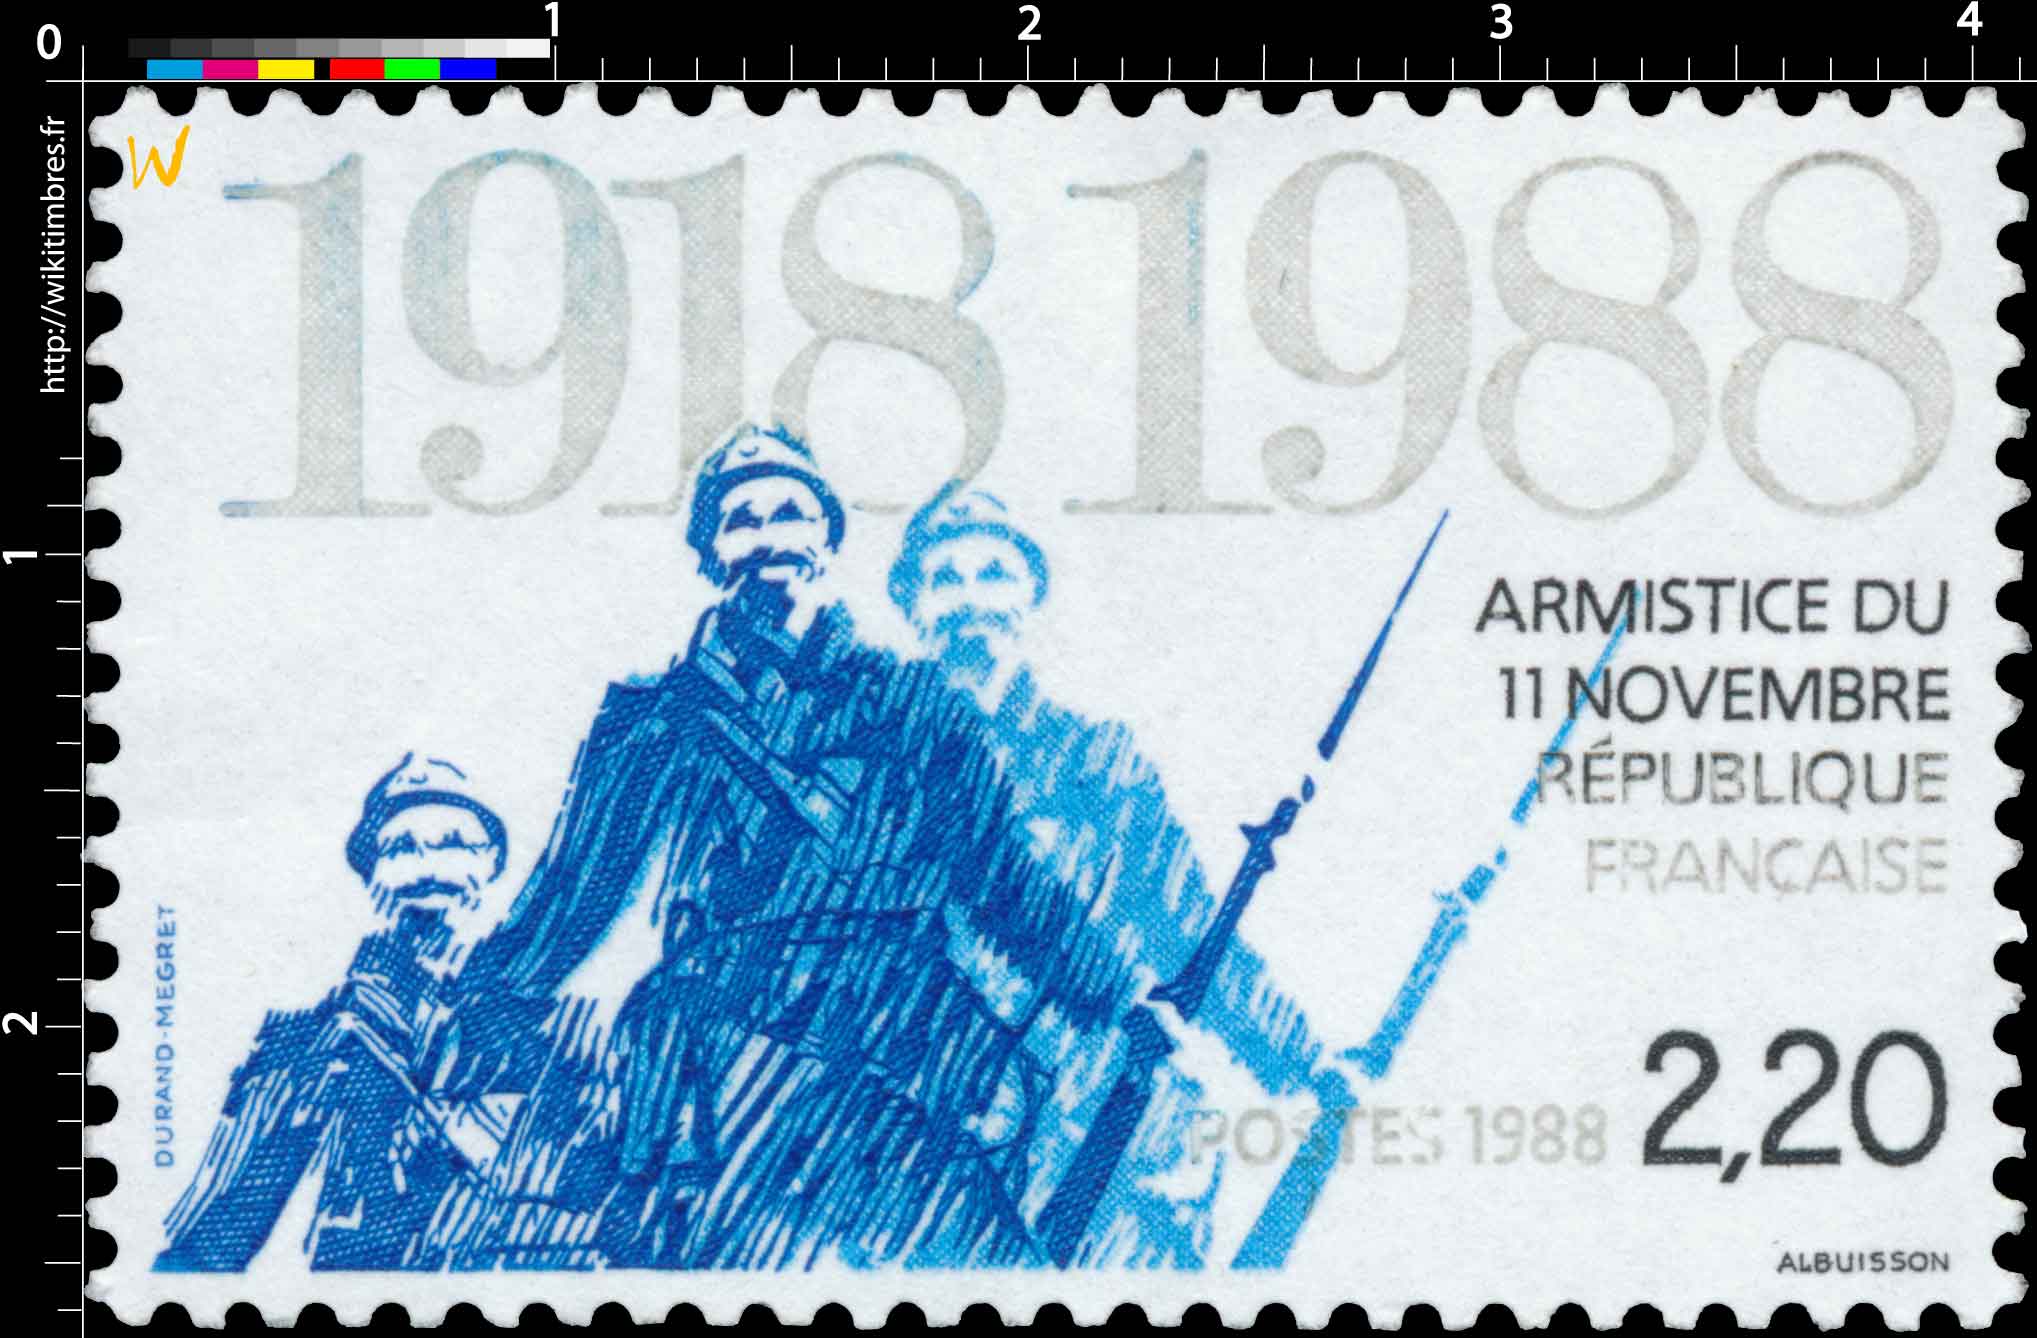 1988 ARMISTICE DU 11 NOVEMBRE 1918-1988